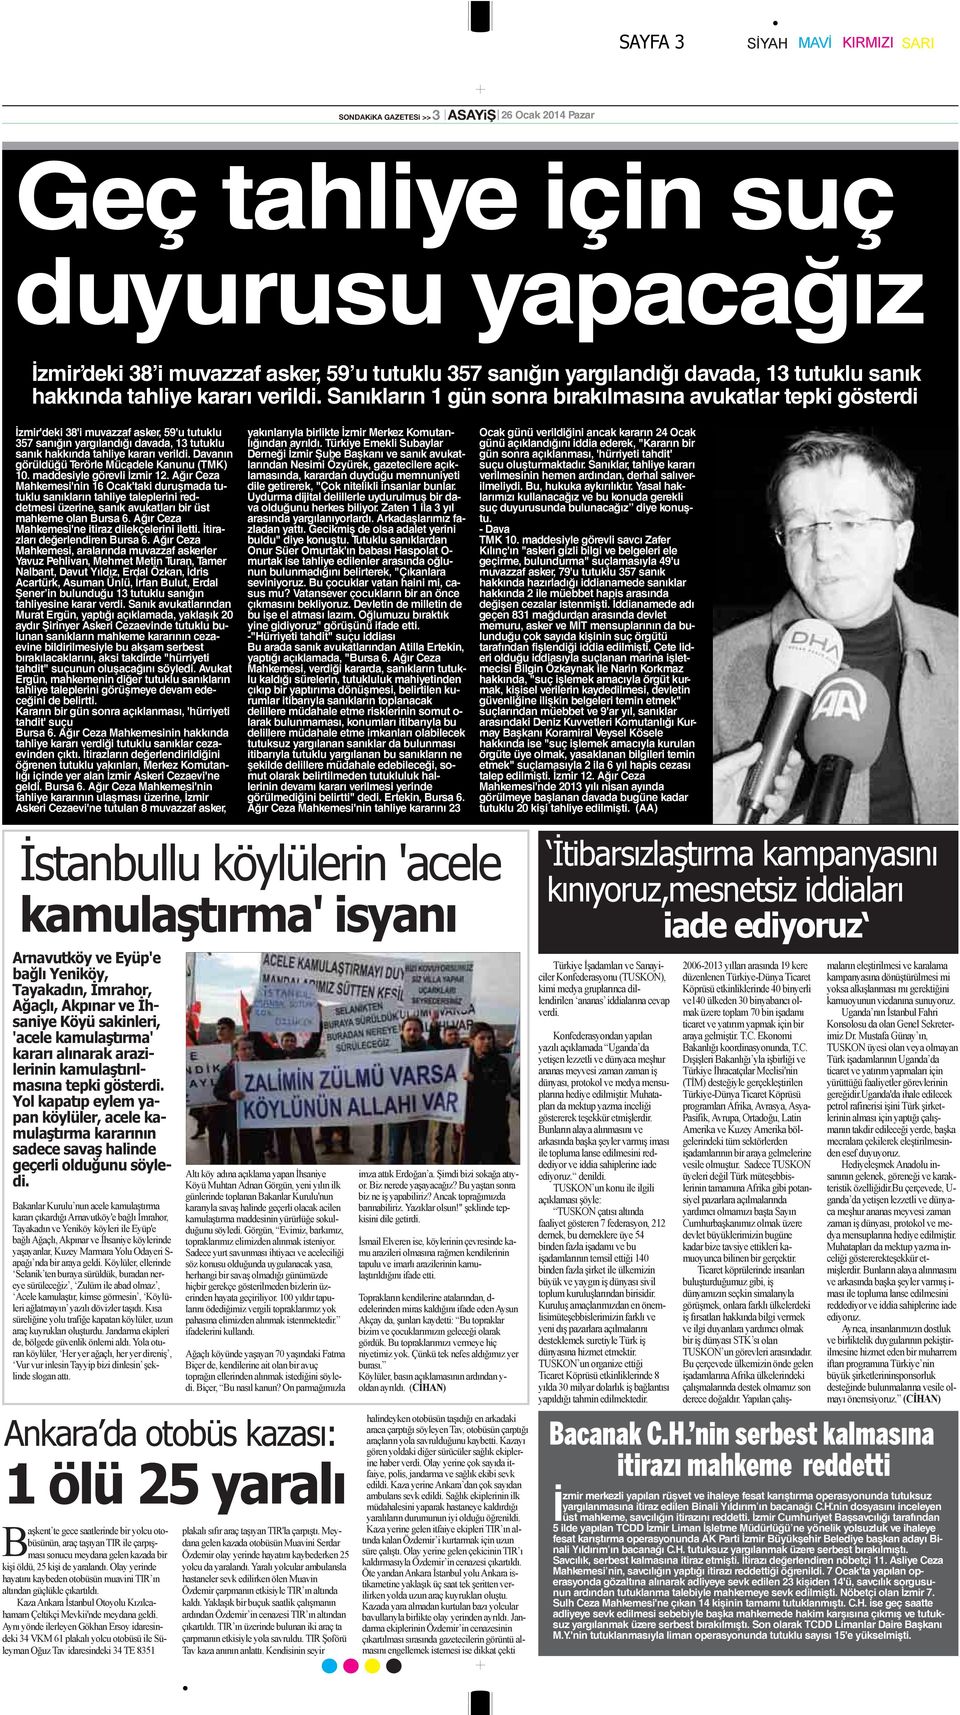 Sanıkların 1 gün sonra bırakılmasına avukatlar tepki gösterdi İzmir'deki 38'i muvazzaf asker, 59'u tutuklu 357 sanığın yargılandığı davada,  Davanın görüldüğü Terörle Mücadele Kanunu (TMK) 10.